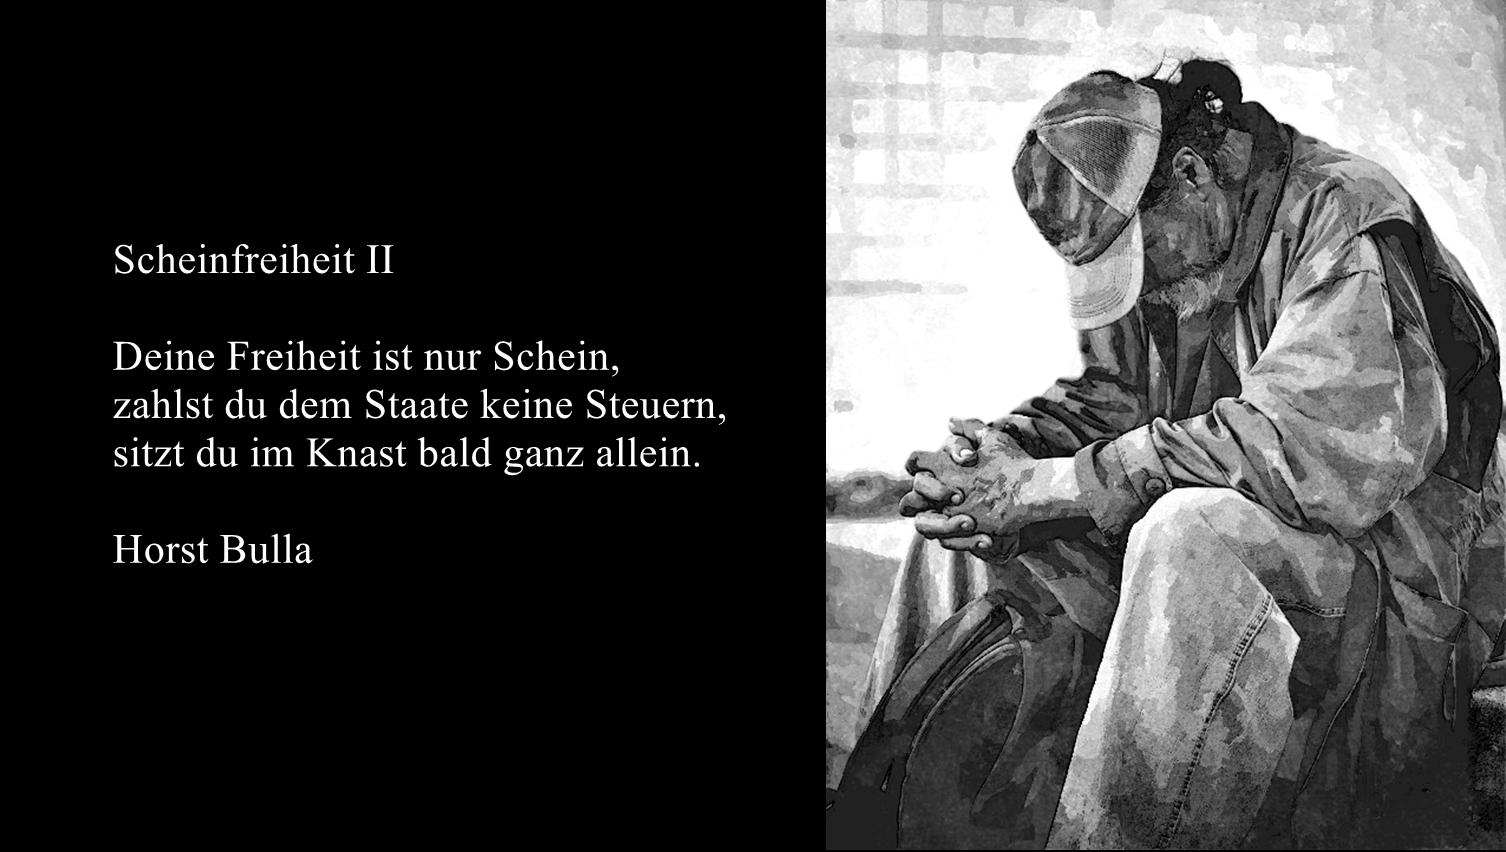 Bildgedicht: Gedicht, Scheinfreiheit II von Horst Bulla